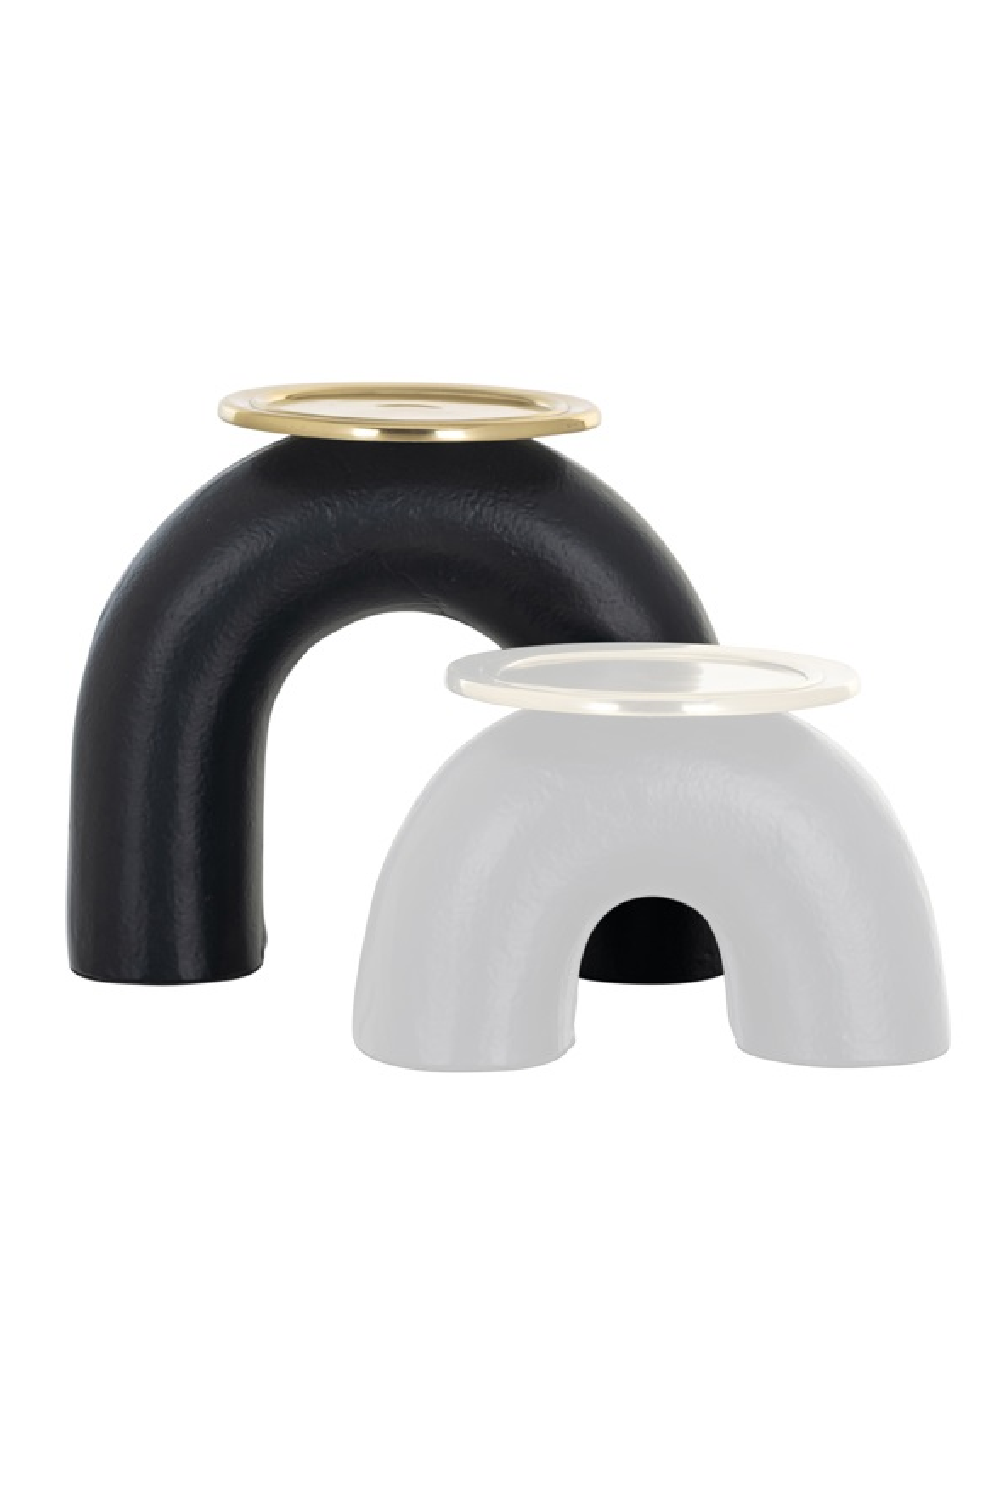 Black Arched Candle Holder L | OROA Femke | Oroa.com